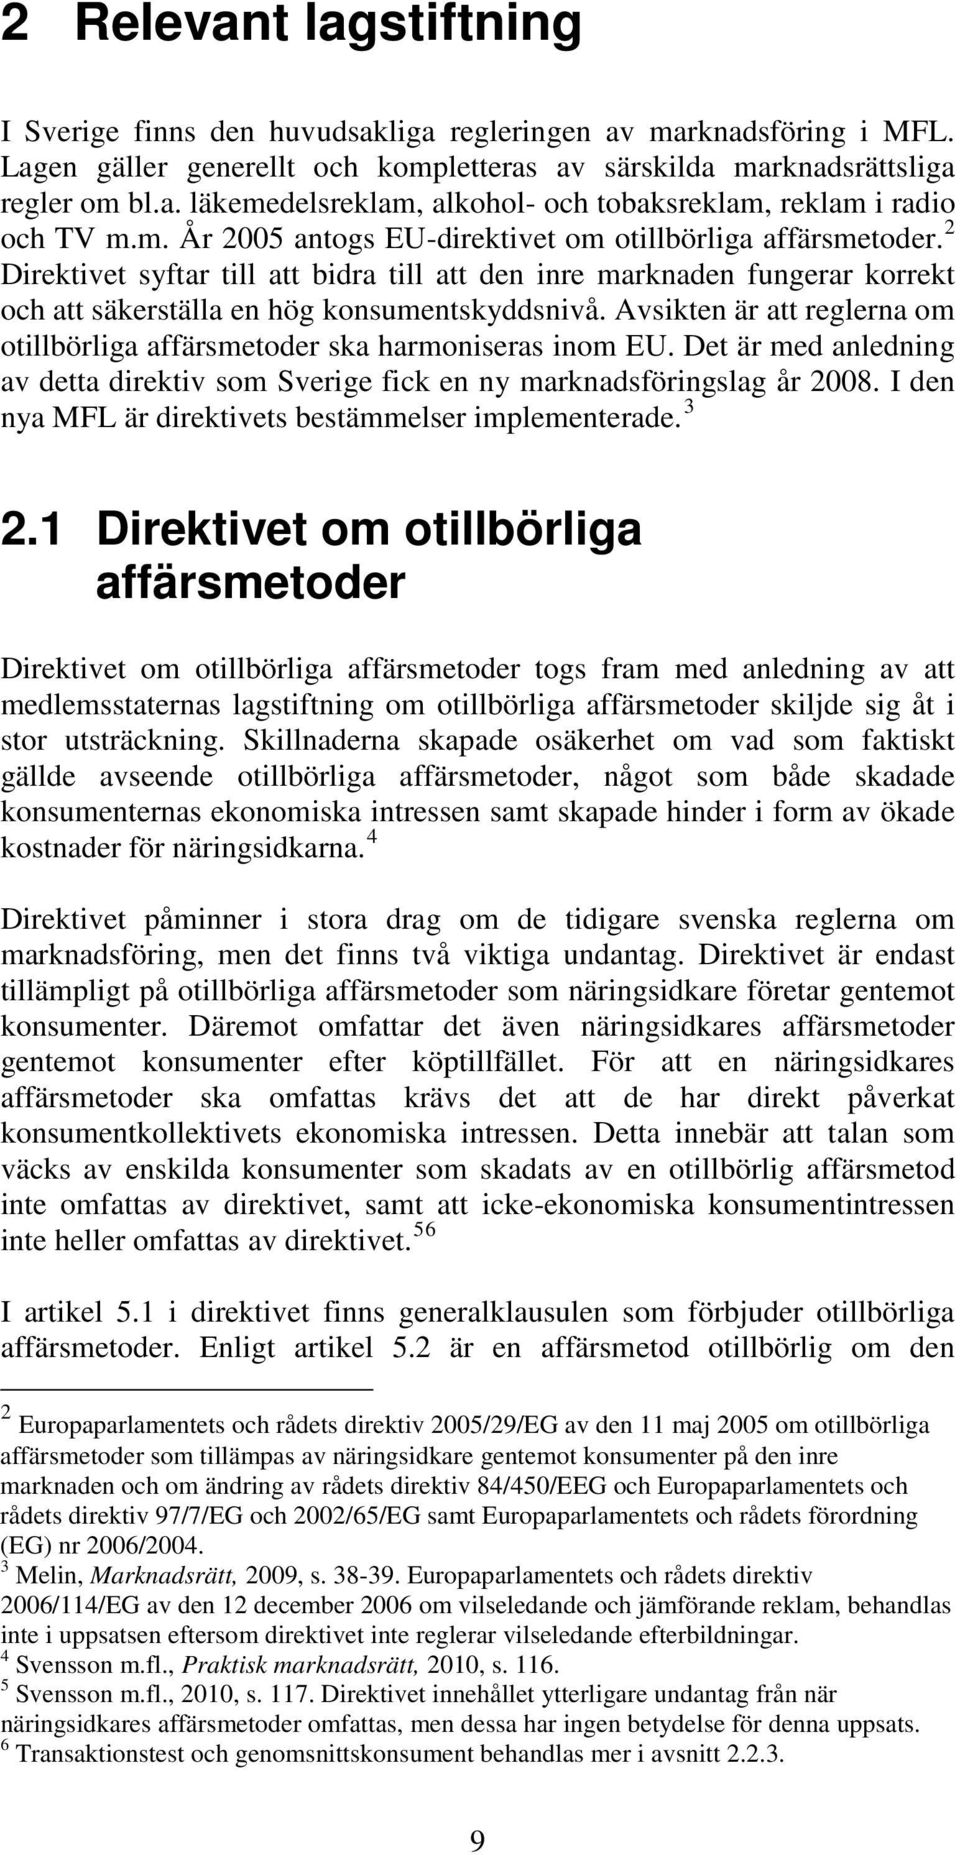 Avsikten är att reglerna om otillbörliga affärsmetoder ska harmoniseras inom EU. Det är med anledning av detta direktiv som Sverige fick en ny marknadsföringslag år 2008.